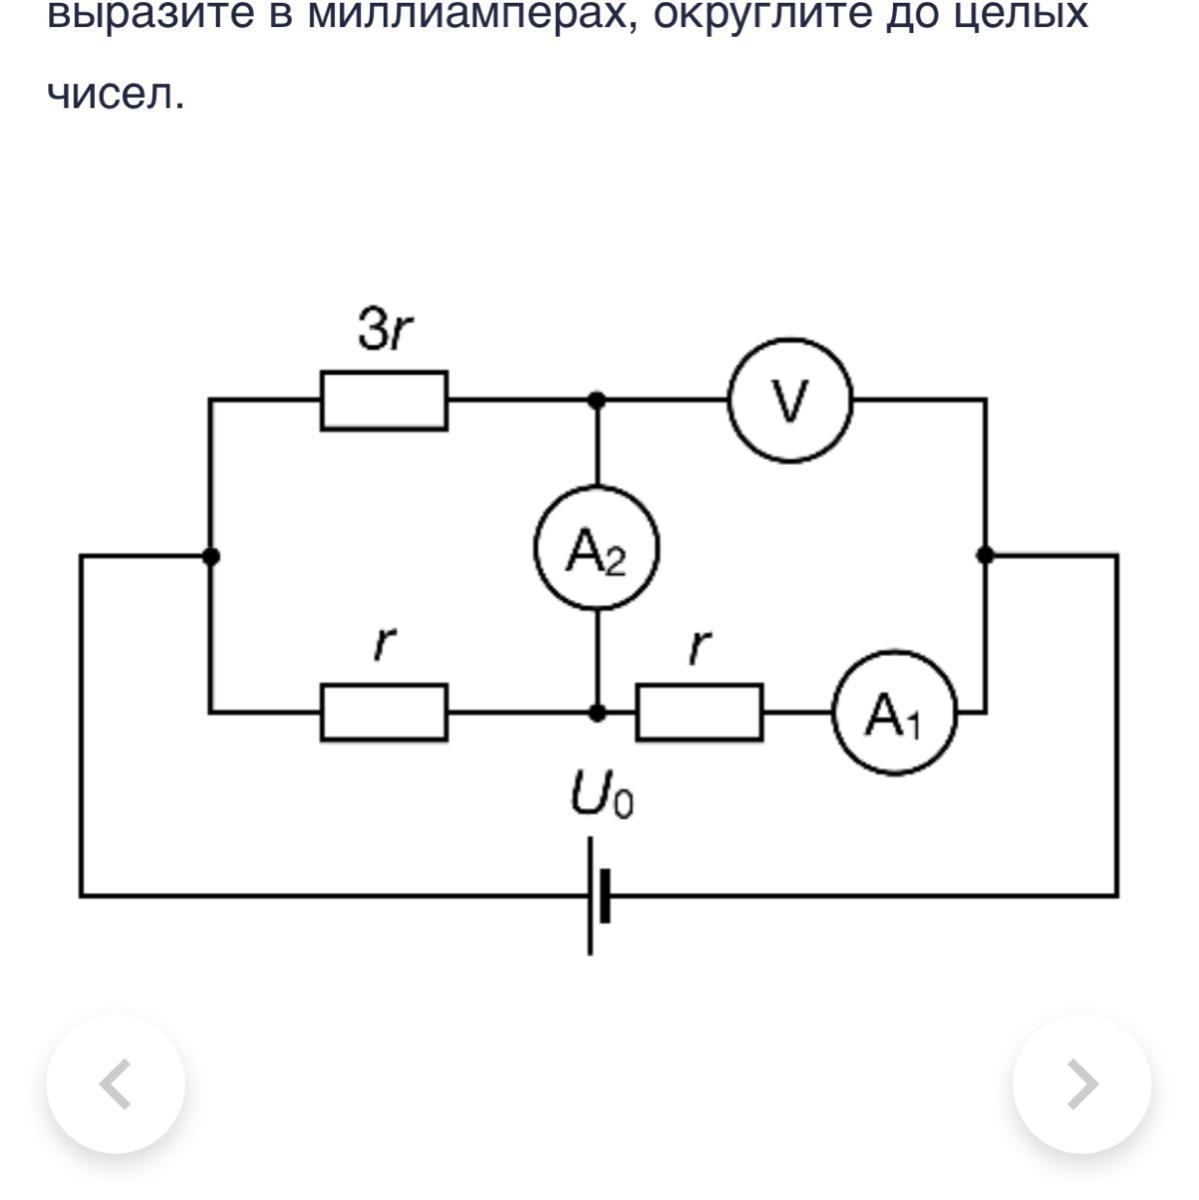 Цепь звуковая схема. Схему с альпильметром вольметром резисторов ключом. В цепи схема которой изображена на рисунке. Изобразить схему в которой будет вольтметр.